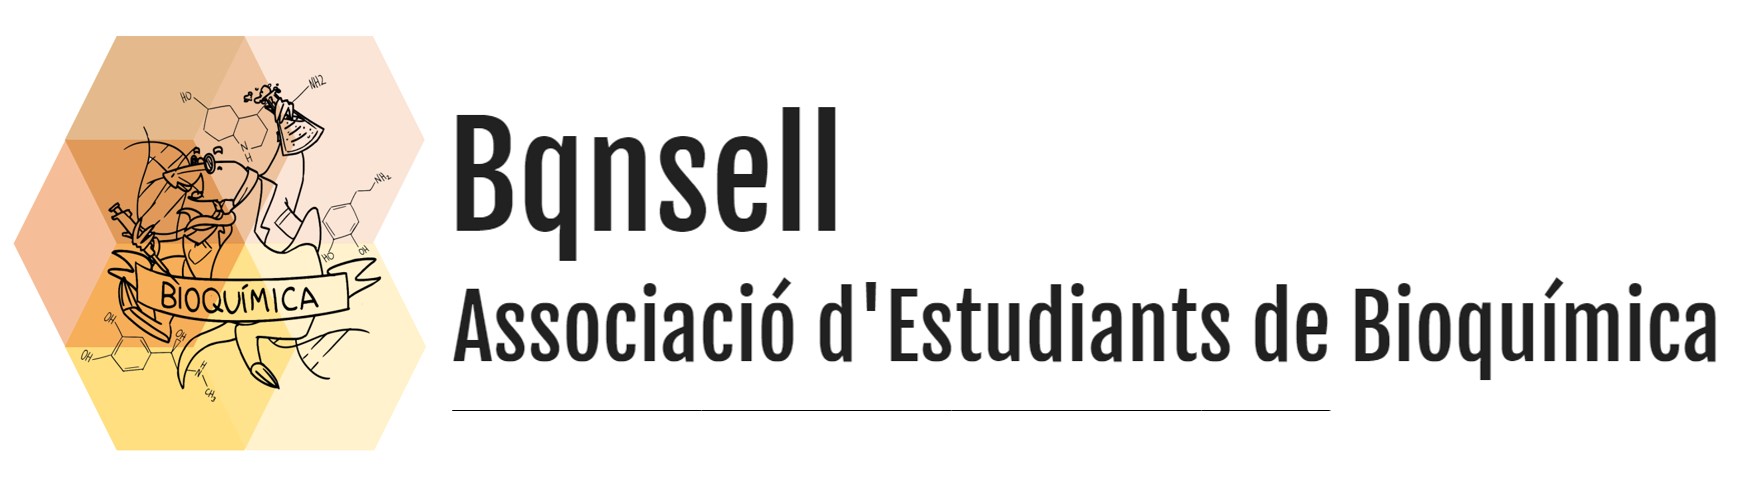 Bqnsell - Associació d